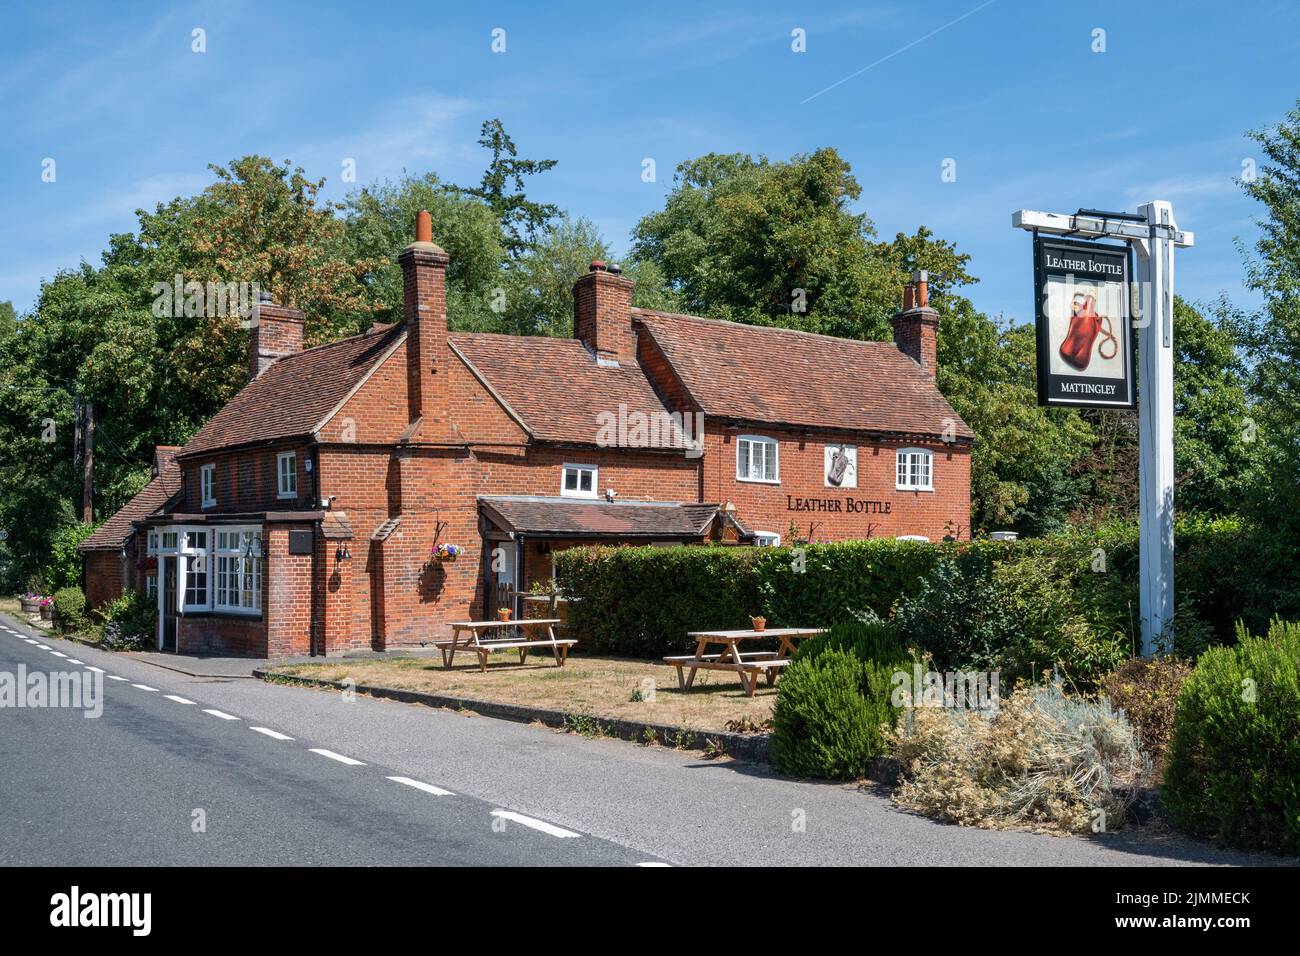 Il pub in bottiglia di pelle a Mattingley, Hampshire, Inghilterra, Regno Unito, un vecchio villaggio inn. Foto Stock